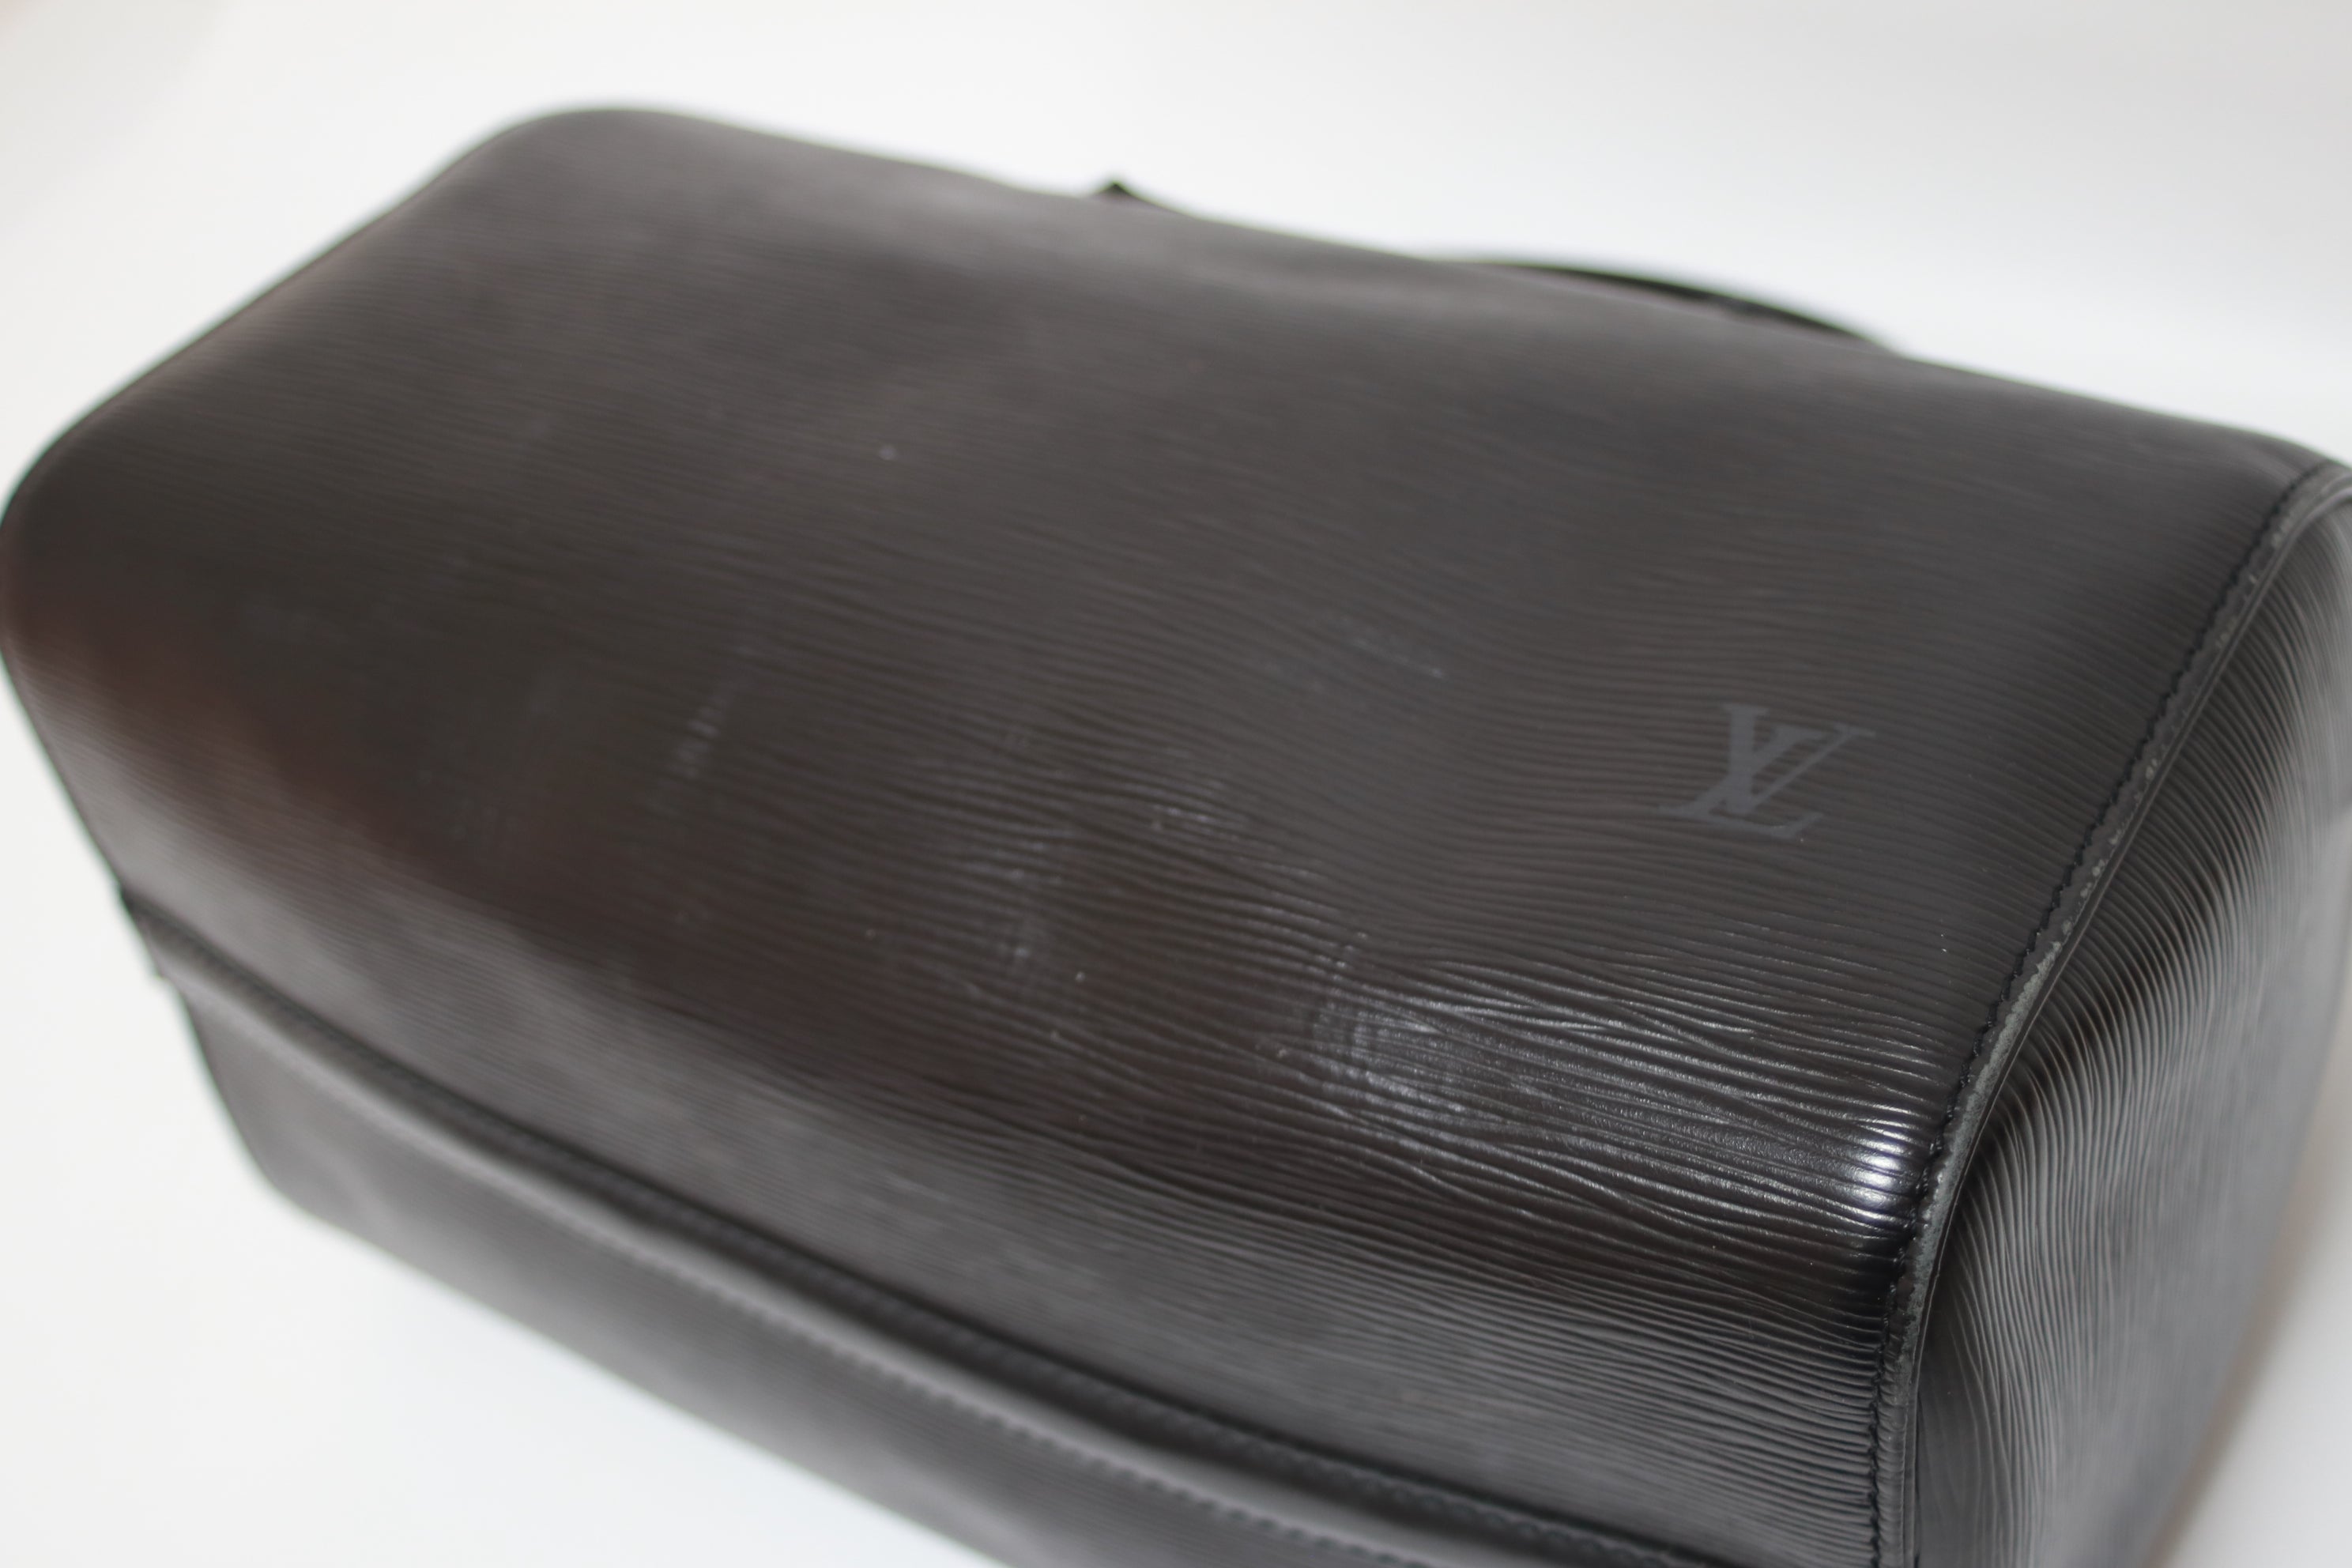 Louis Vuitton Speedy 30 Epi Handbag Black Used (7628)